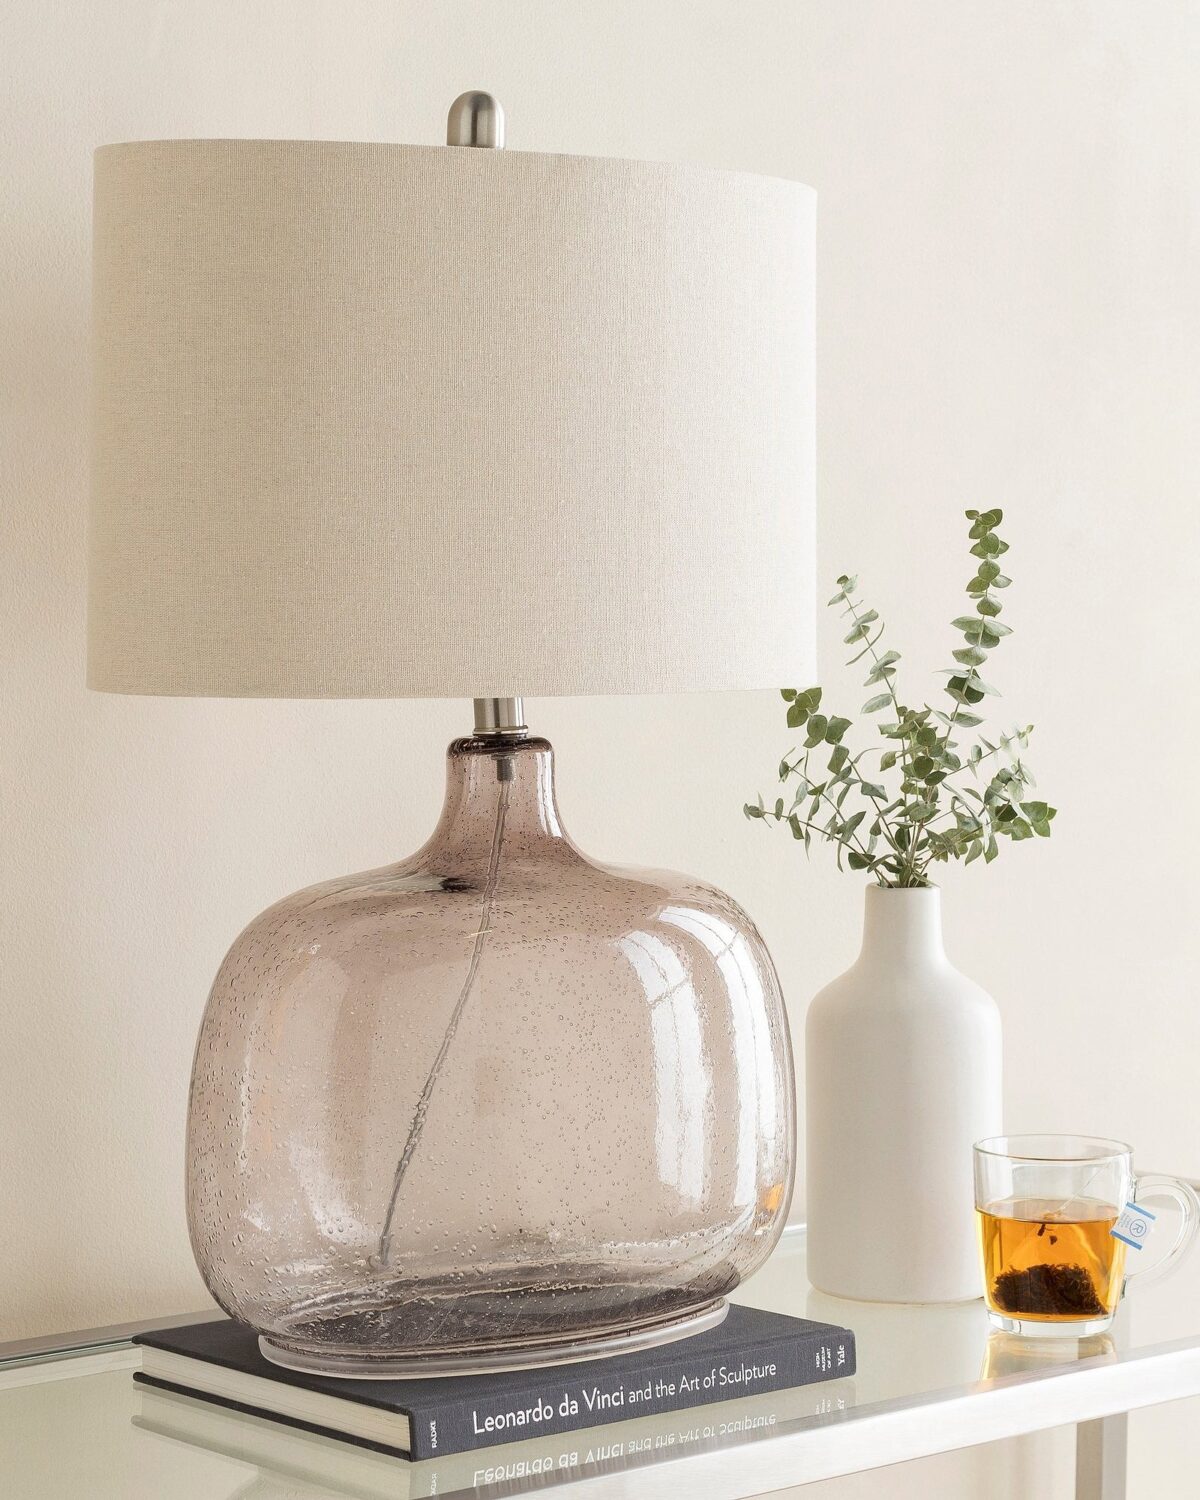 Настольная лампа "Зельда" с бежевым стеклянным основанием с легким эффектом капель на стекле с овальным льняным плафоном.